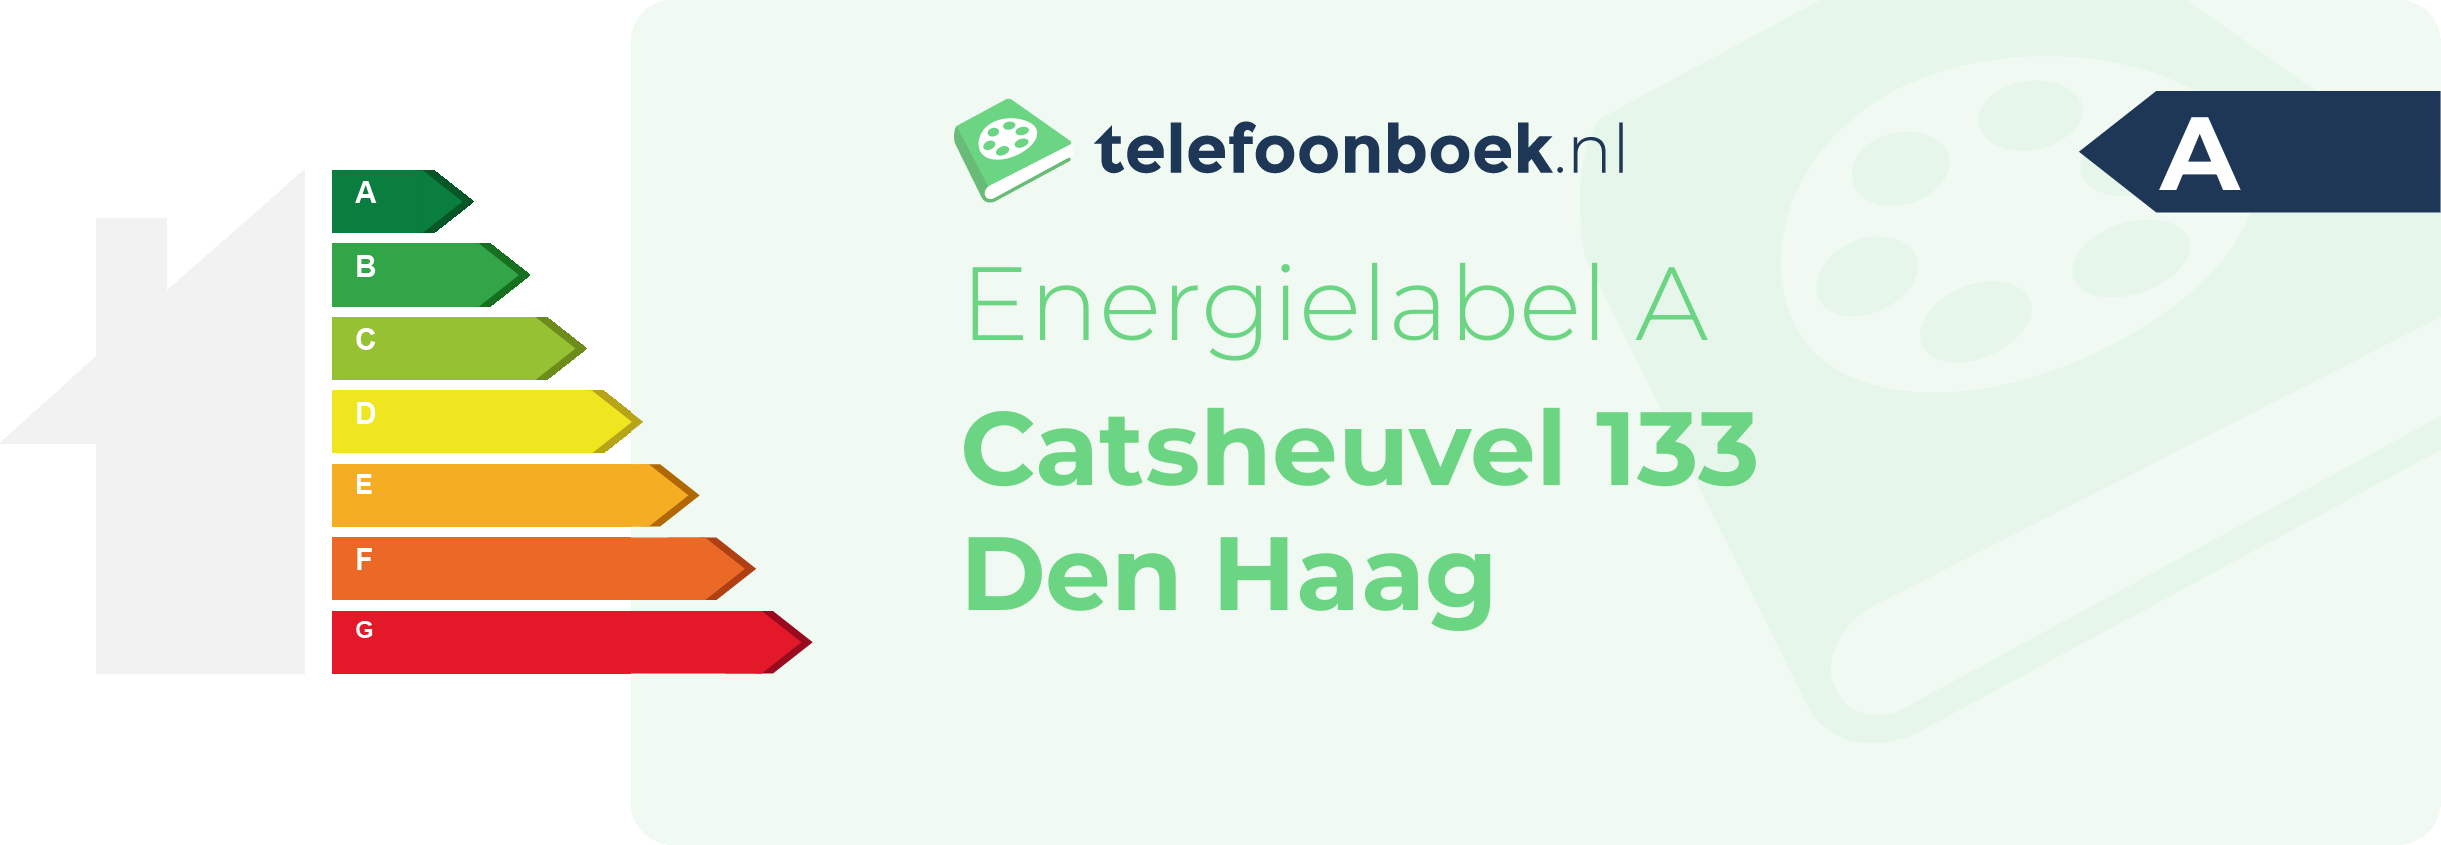 Energielabel Catsheuvel 133 Den Haag